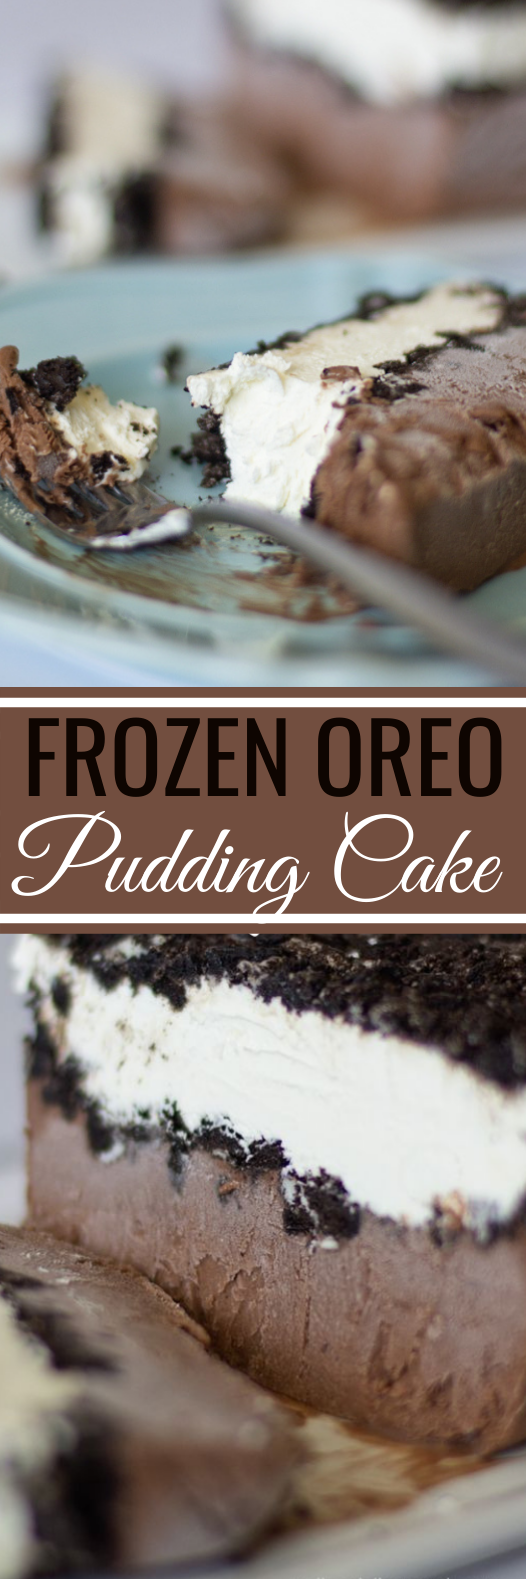 Oreo Pudding Cake #desserts #cake #nobake #pudding #oreo